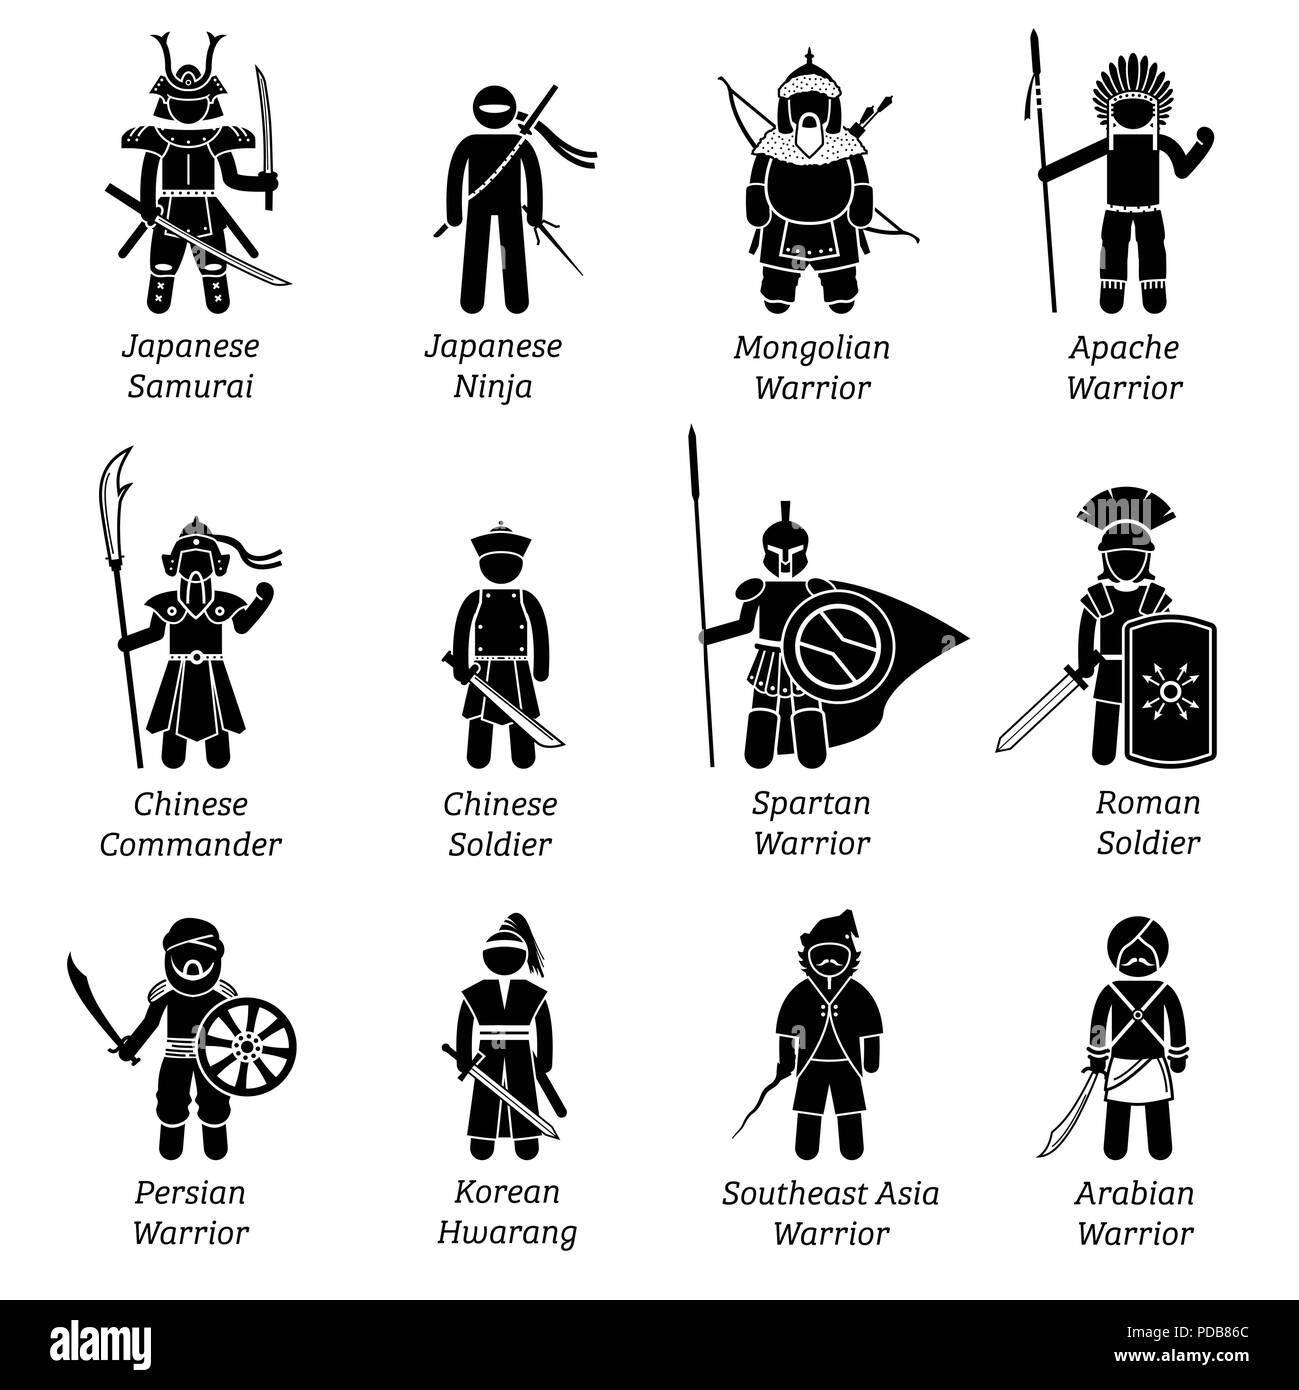 Antichi guerrieri di tutto il mondo. Le illustrazioni mostrano i soldati antico, militare, combattenti, vestito, usura, armi e armature di diversi dinastia. Illustrazione Vettoriale